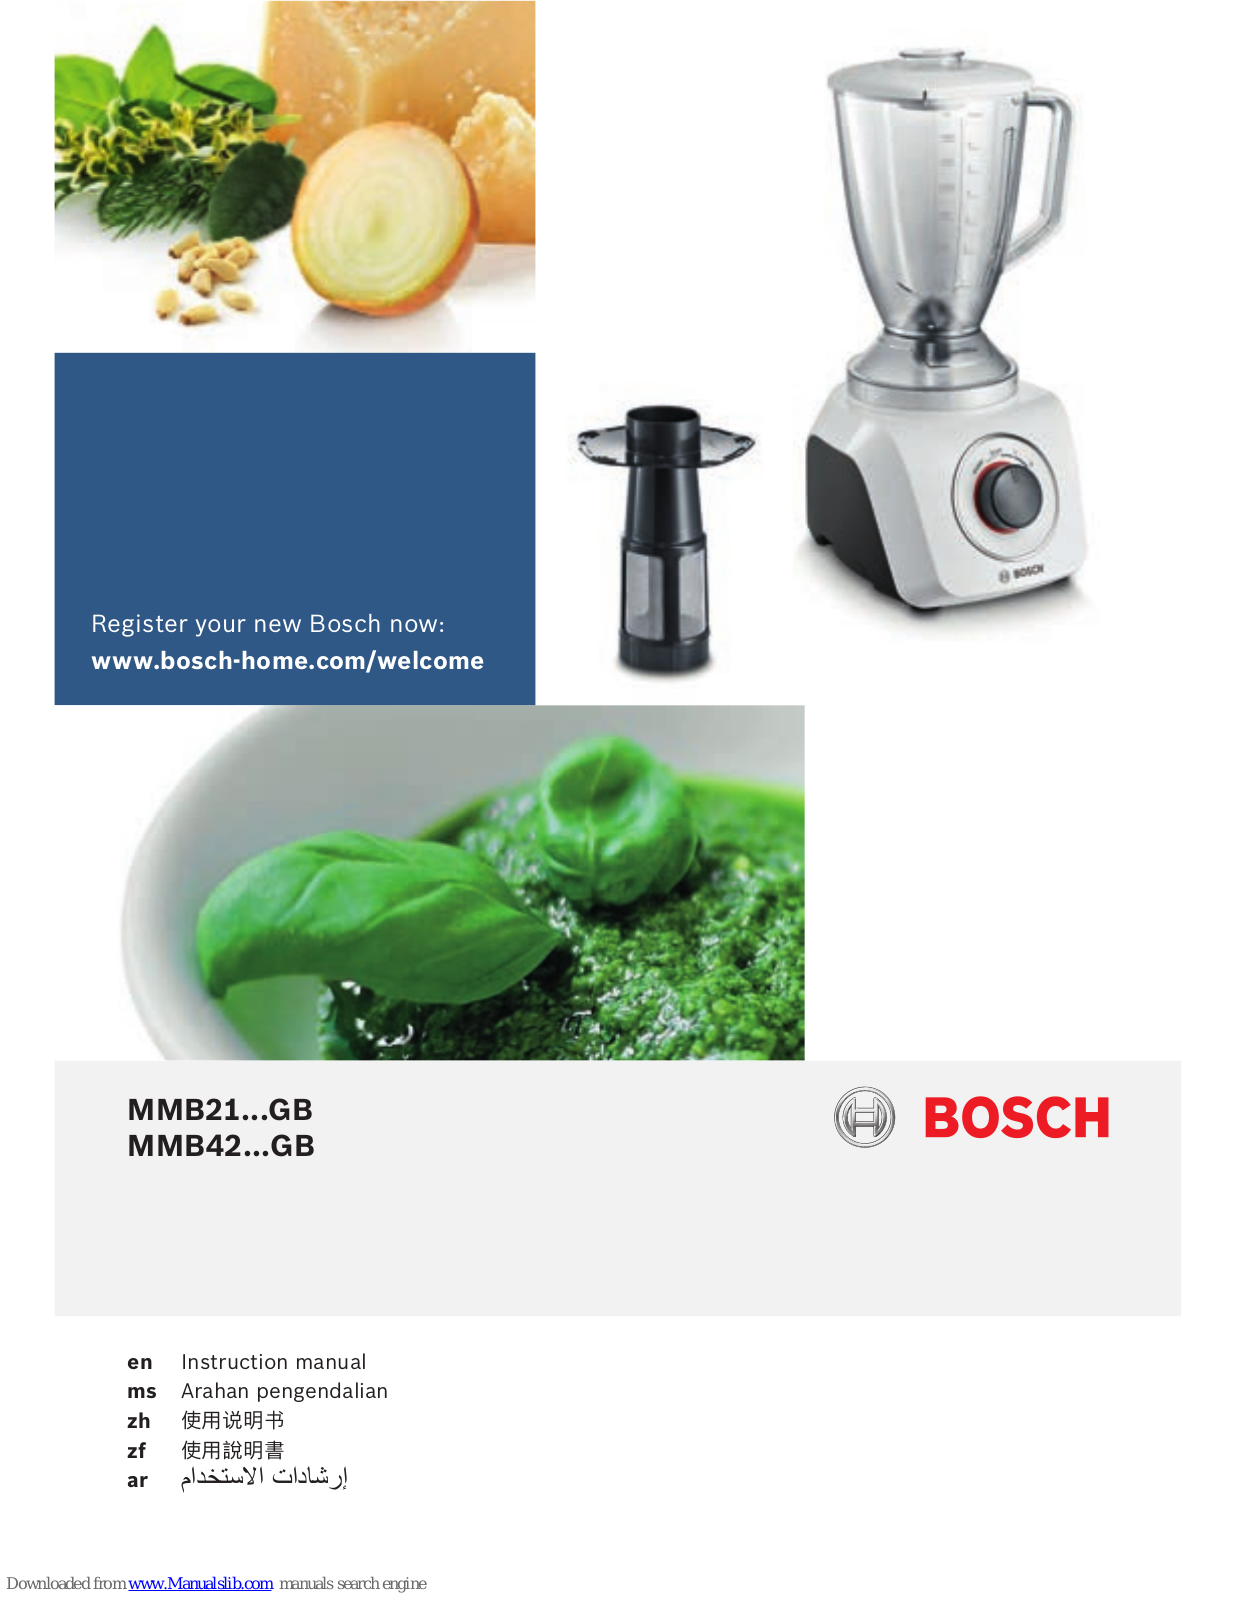 Bosch MMB21...GB, MMB42...GB Instruction Manual